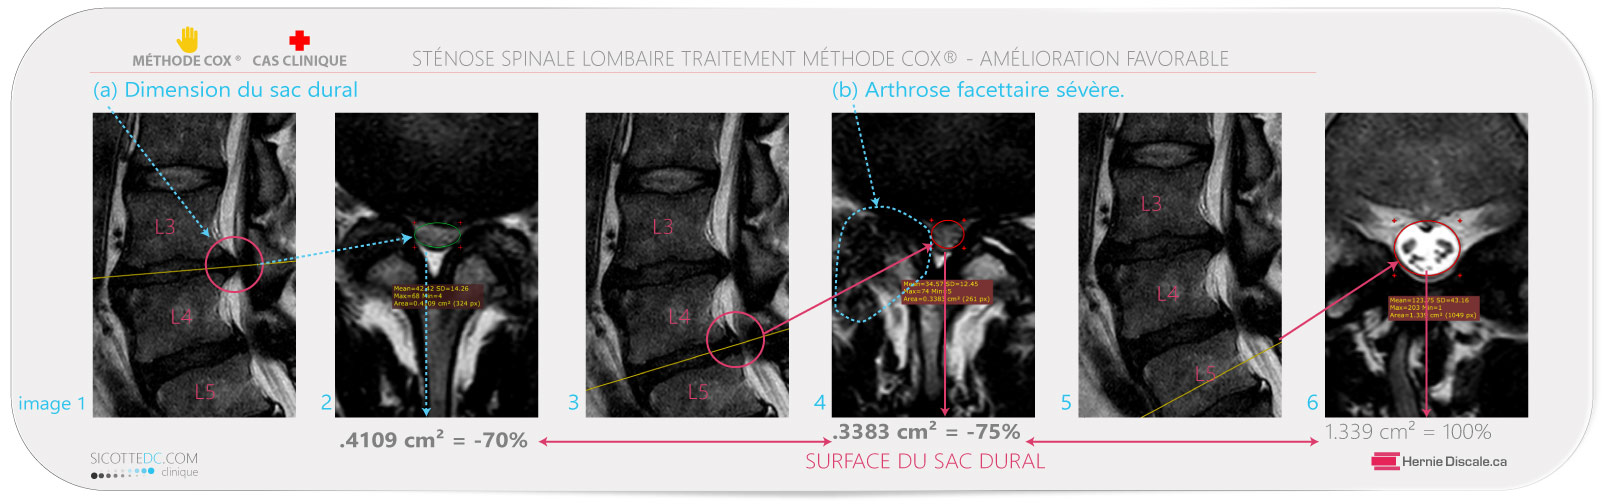 Sténose spinale lombaire L3-L4 et L4-L5 avec dimension du sac thecal. Marche a pied sans douleur. Méthode Cox®.